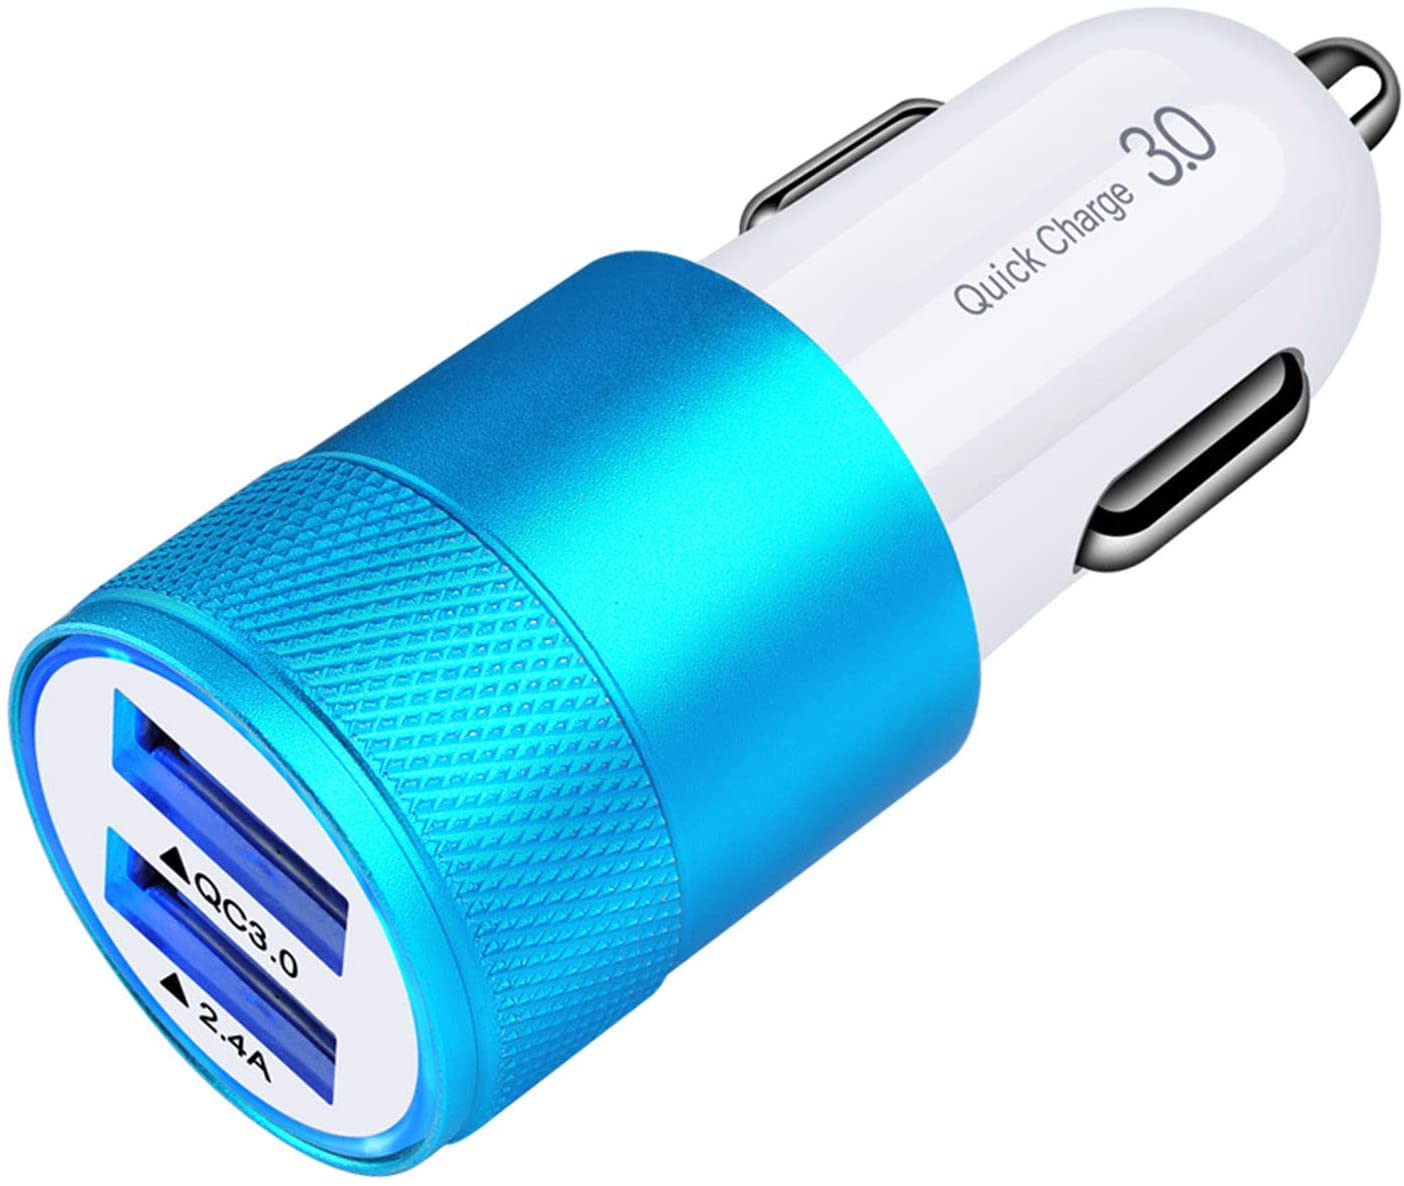 LS Quick Charging USB Car Charger 3.0 (2 Ports)